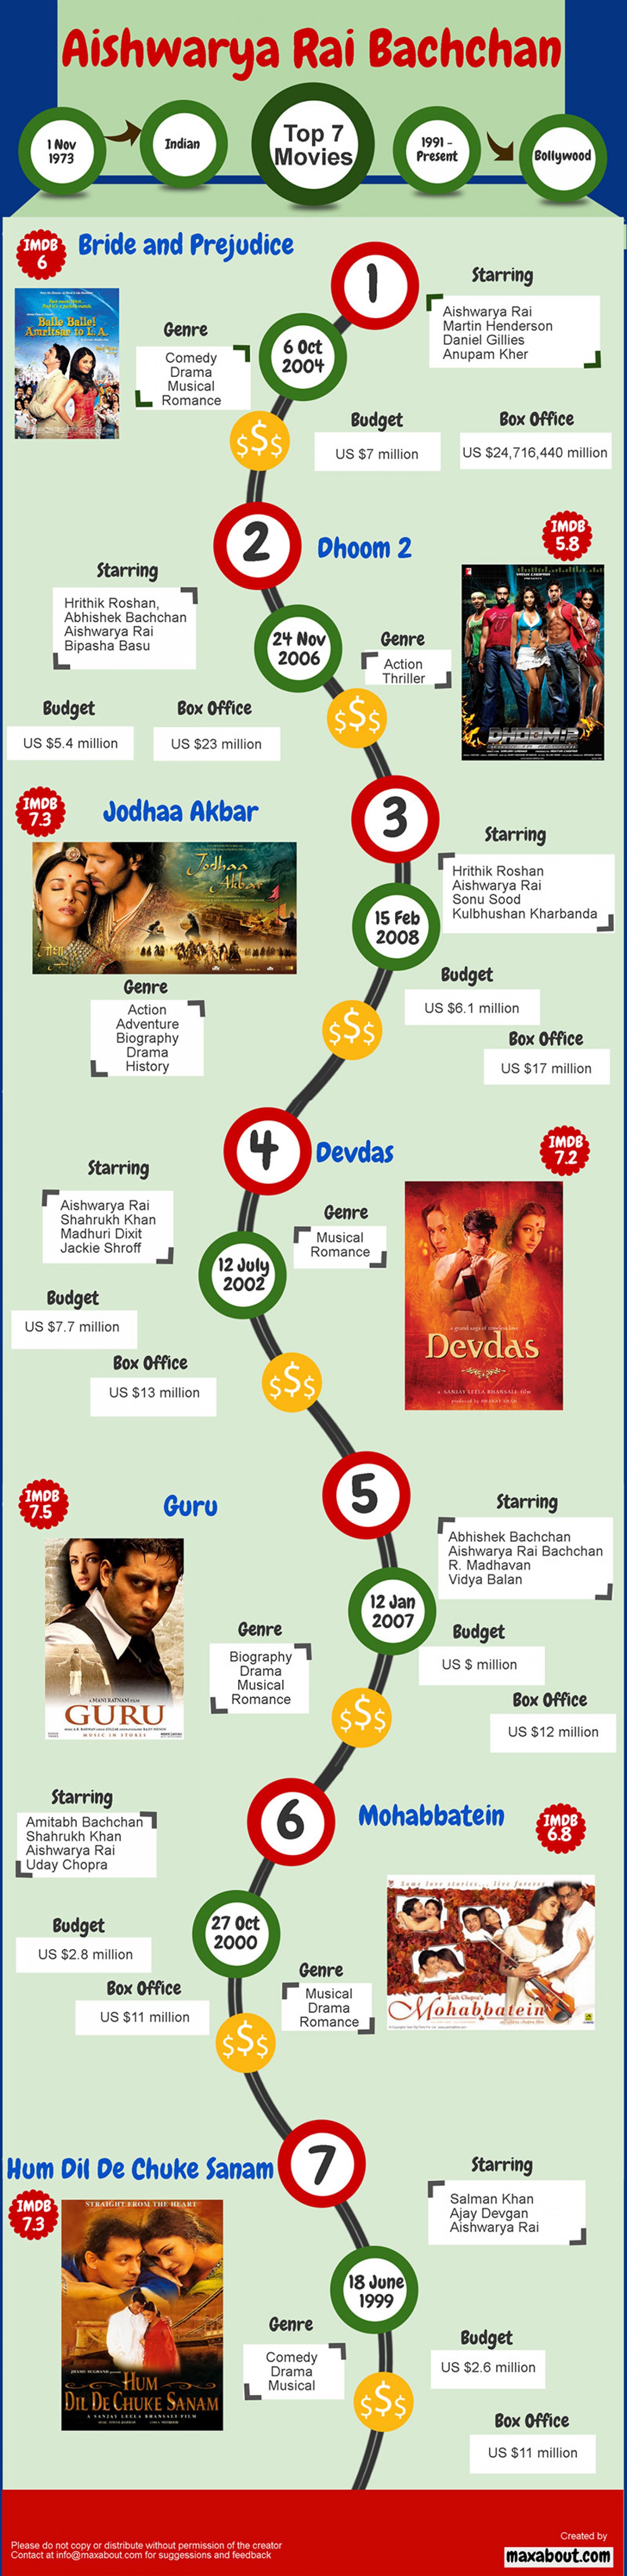 8. Top 7 movies Aishwarya Rai